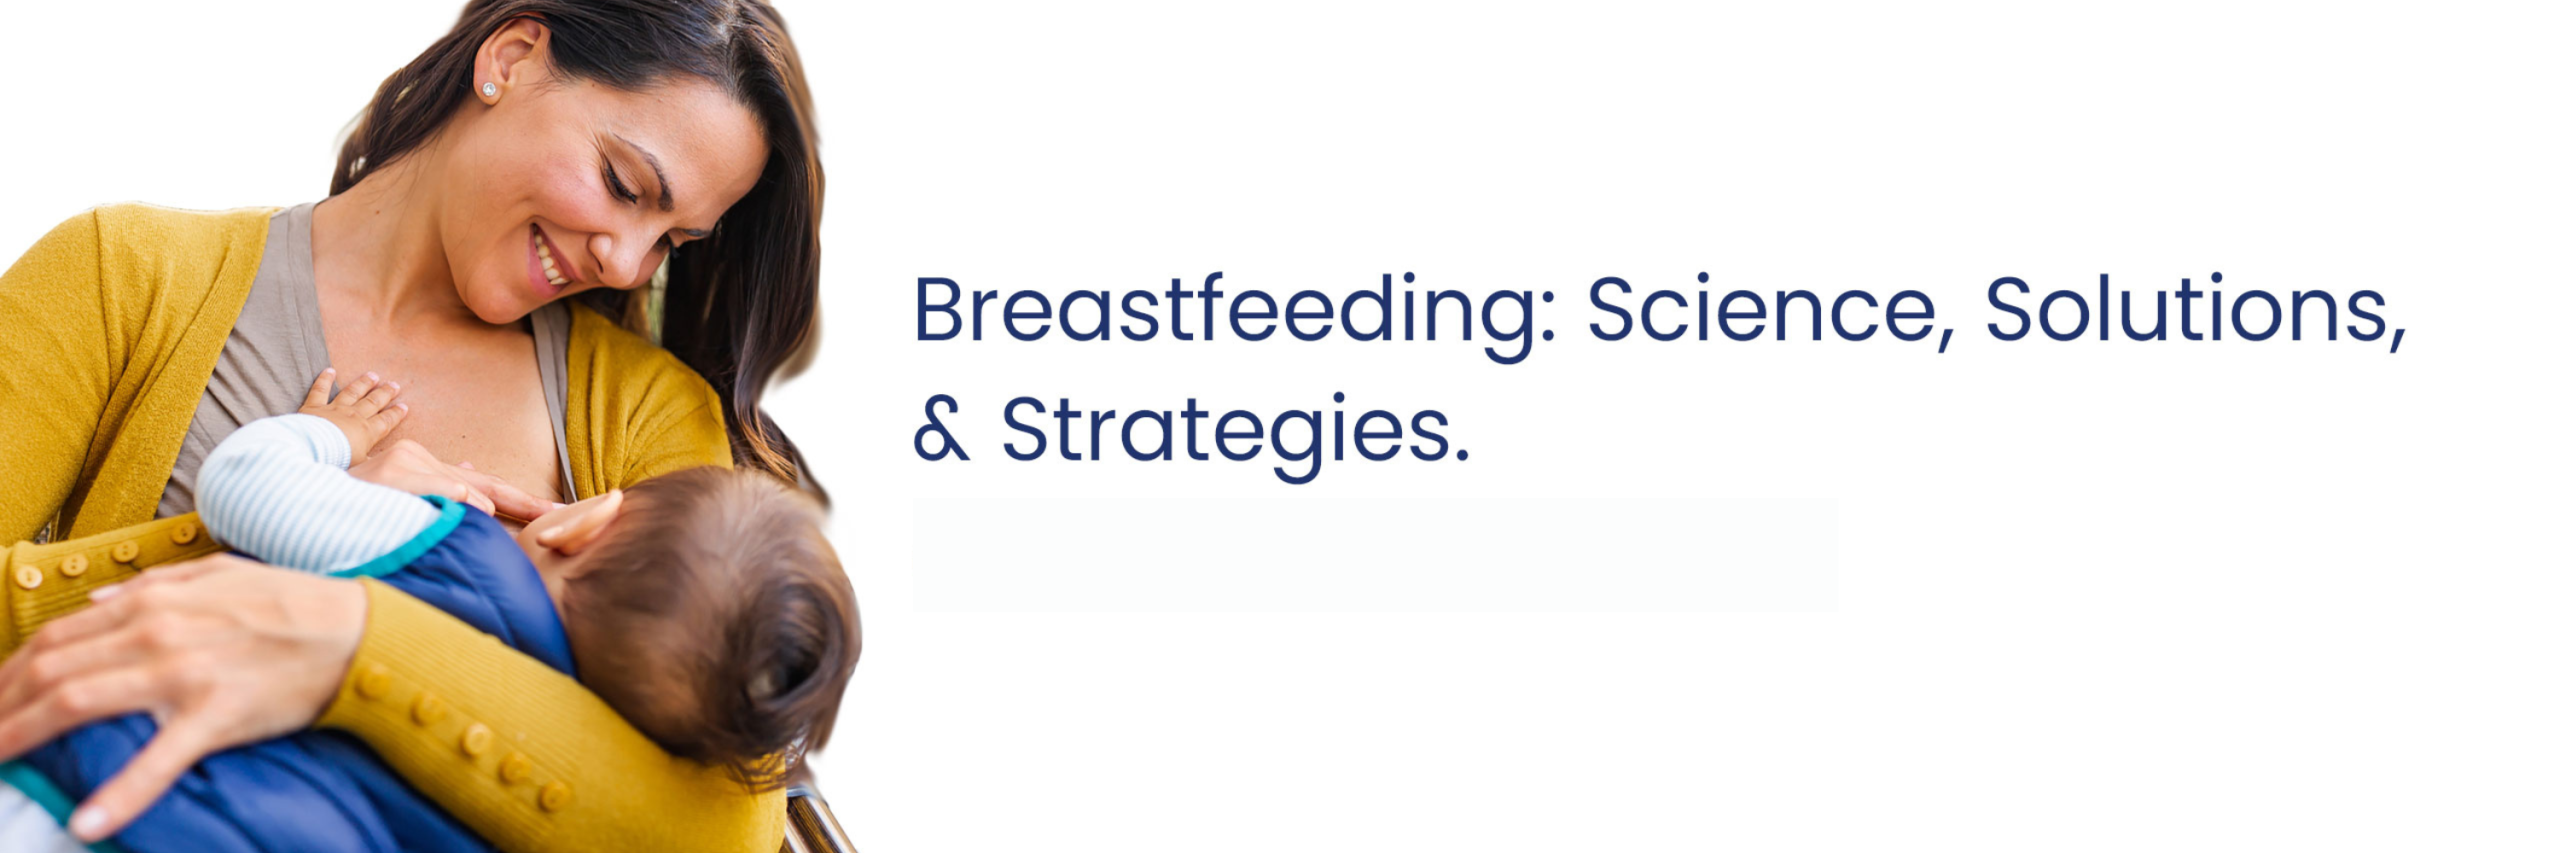 Breastfeeding: Science, Solutions & Strategies - Now Online!